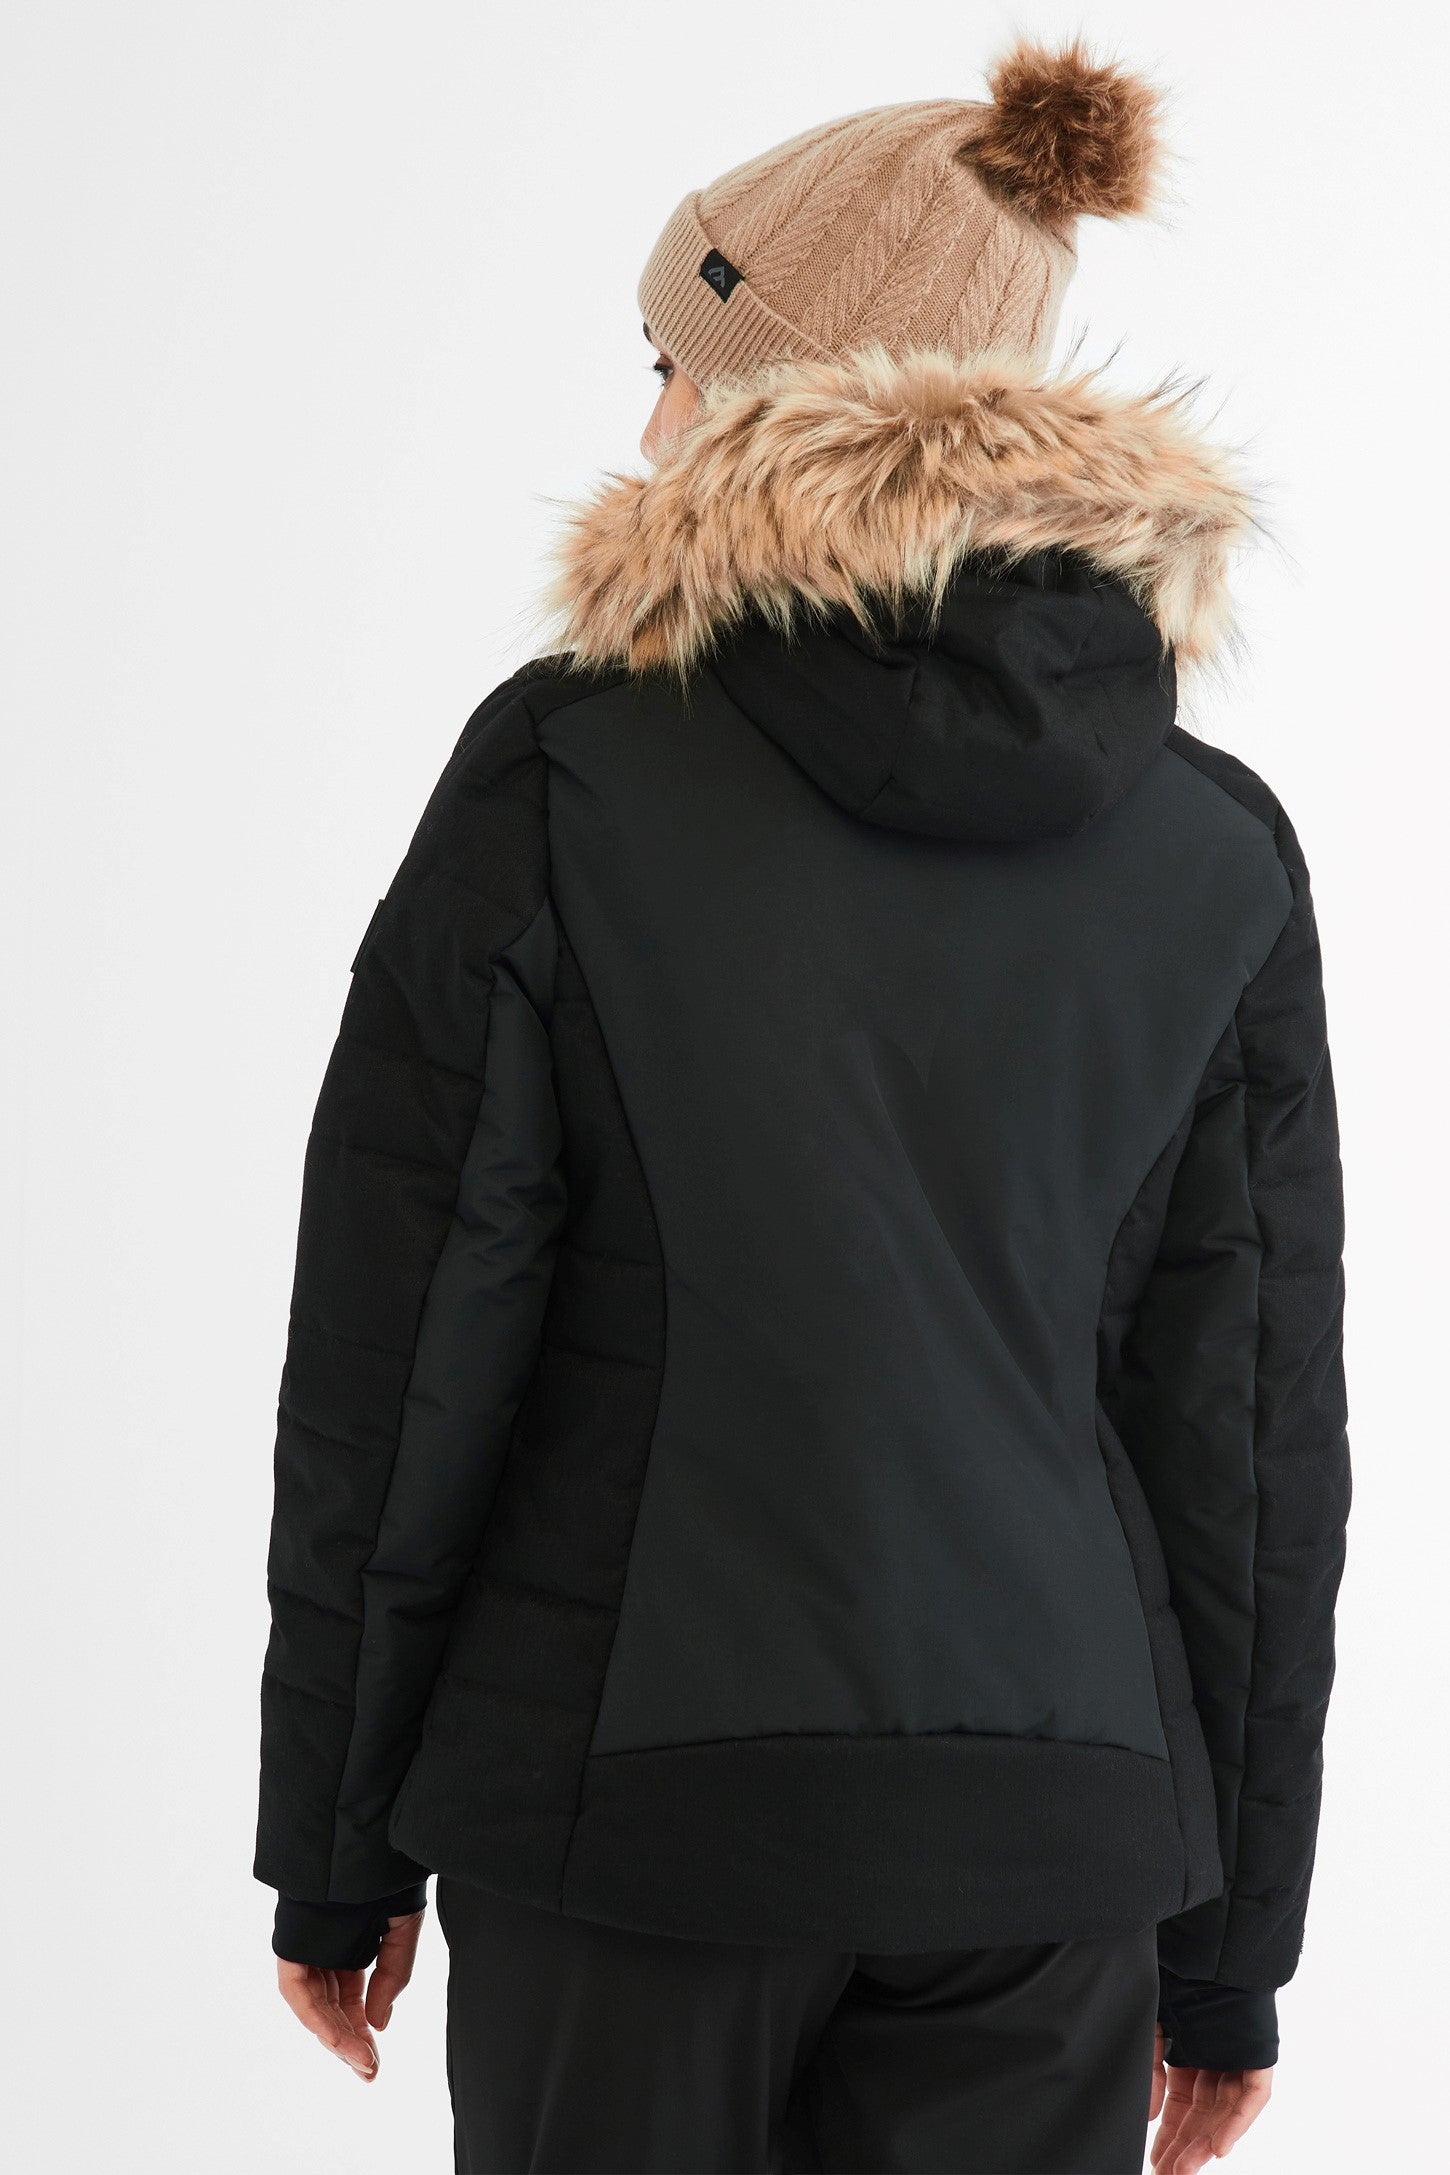 Manteau de ski hiver BM - Femme && NOIR